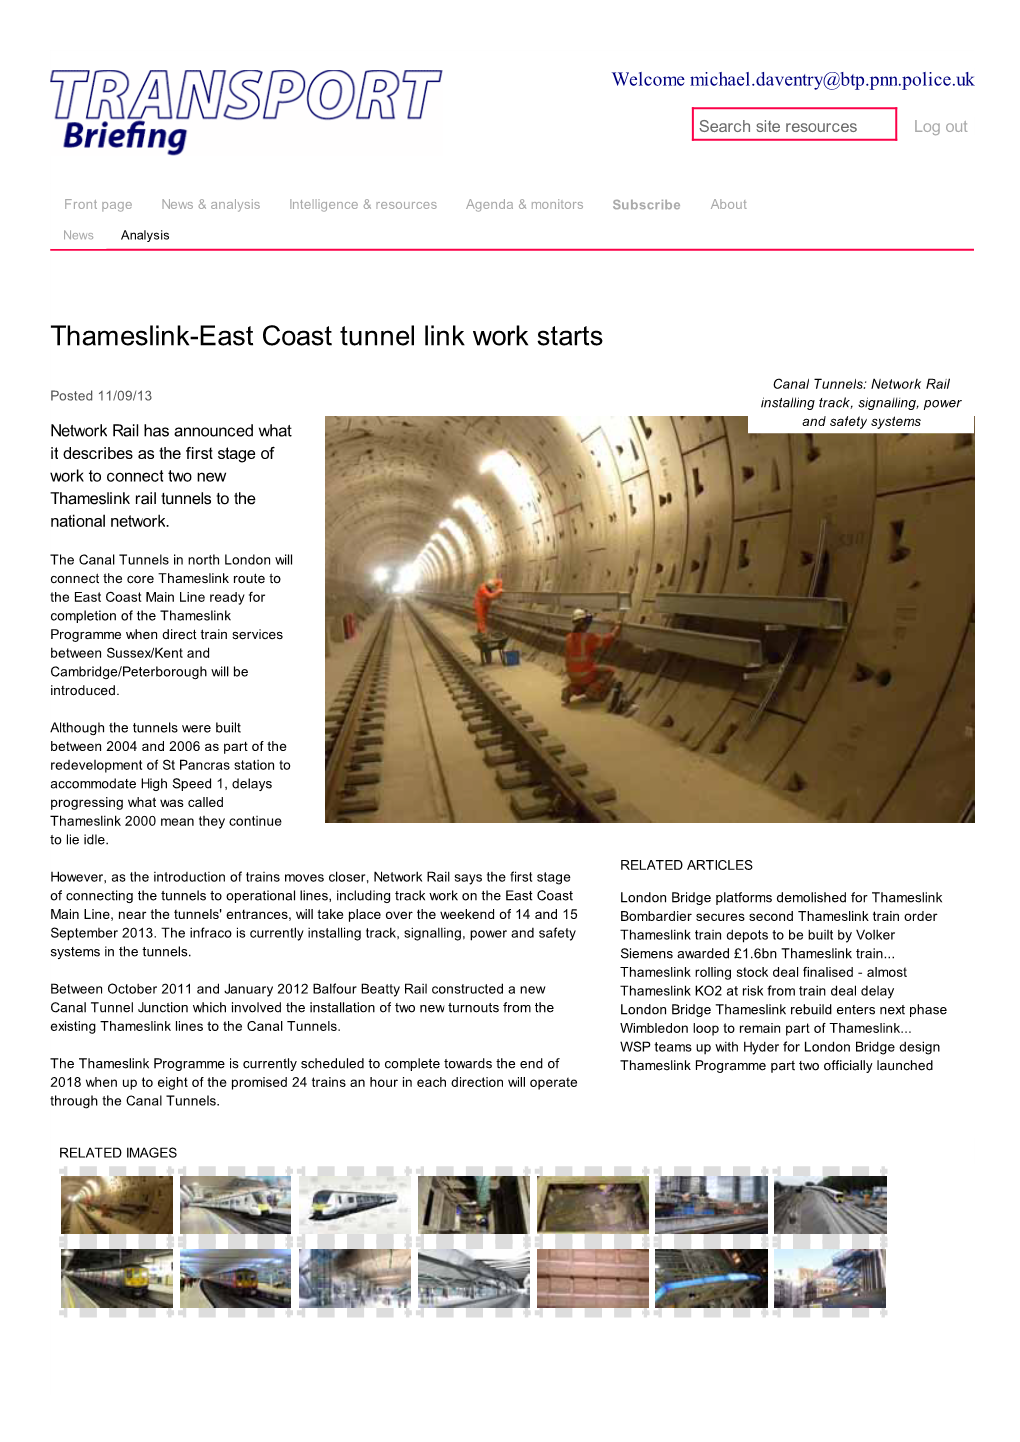 Thameslink-East Coast Tunnel Link Work Starts